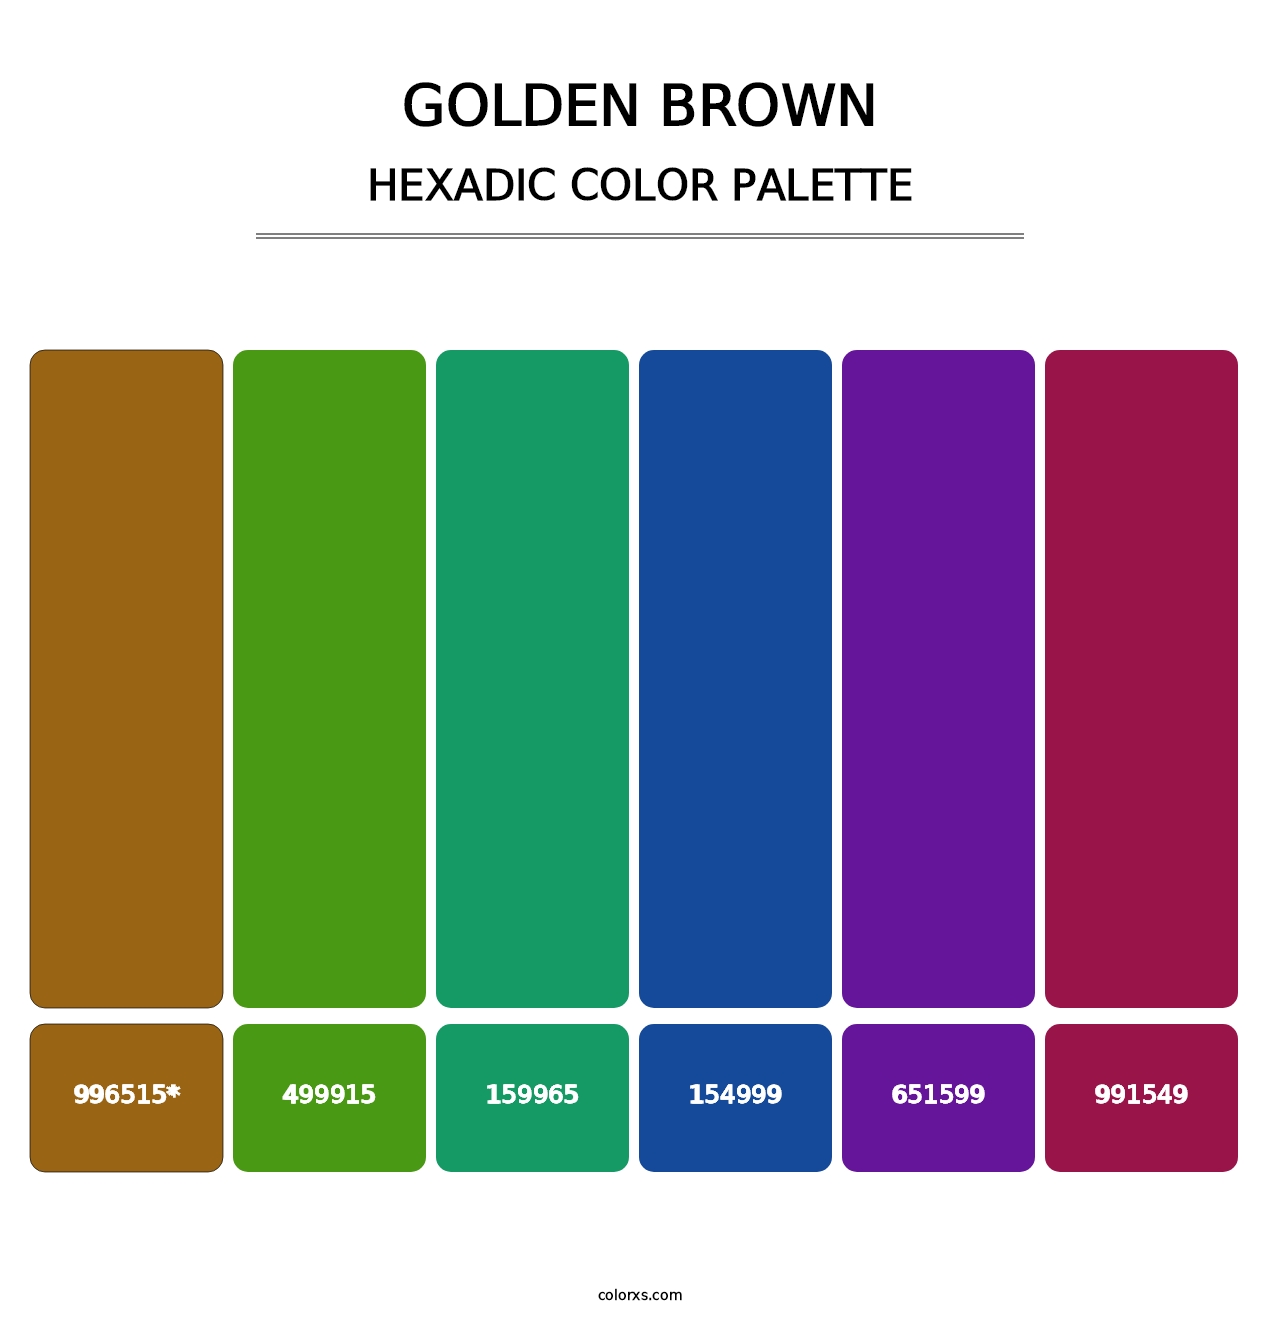 Golden brown - Hexadic Color Palette